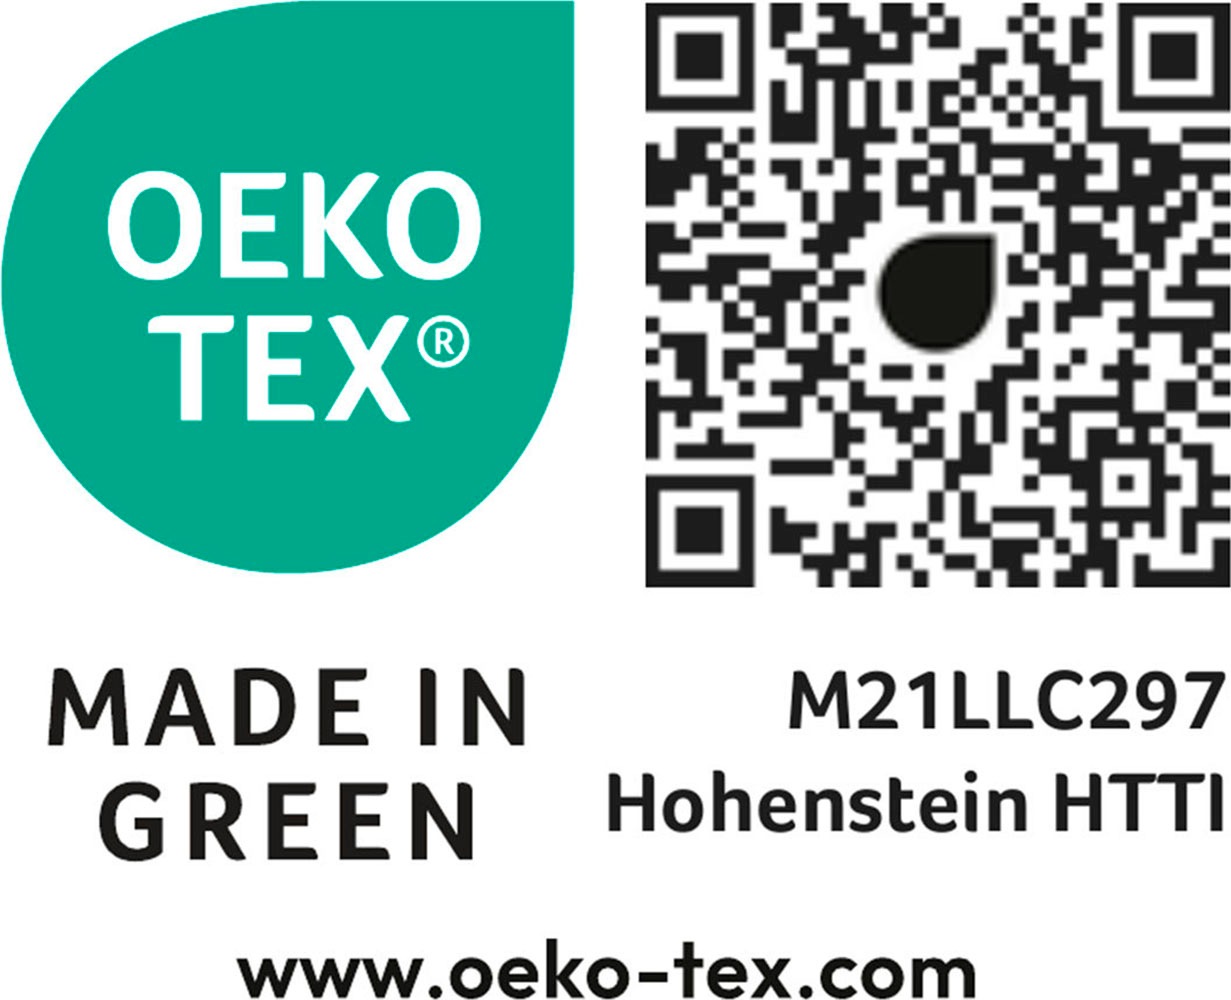 Neutex for you! Kissenhülle »Net Eco«, (1 St.), Made in Green zertifiziert, ohne Füllung